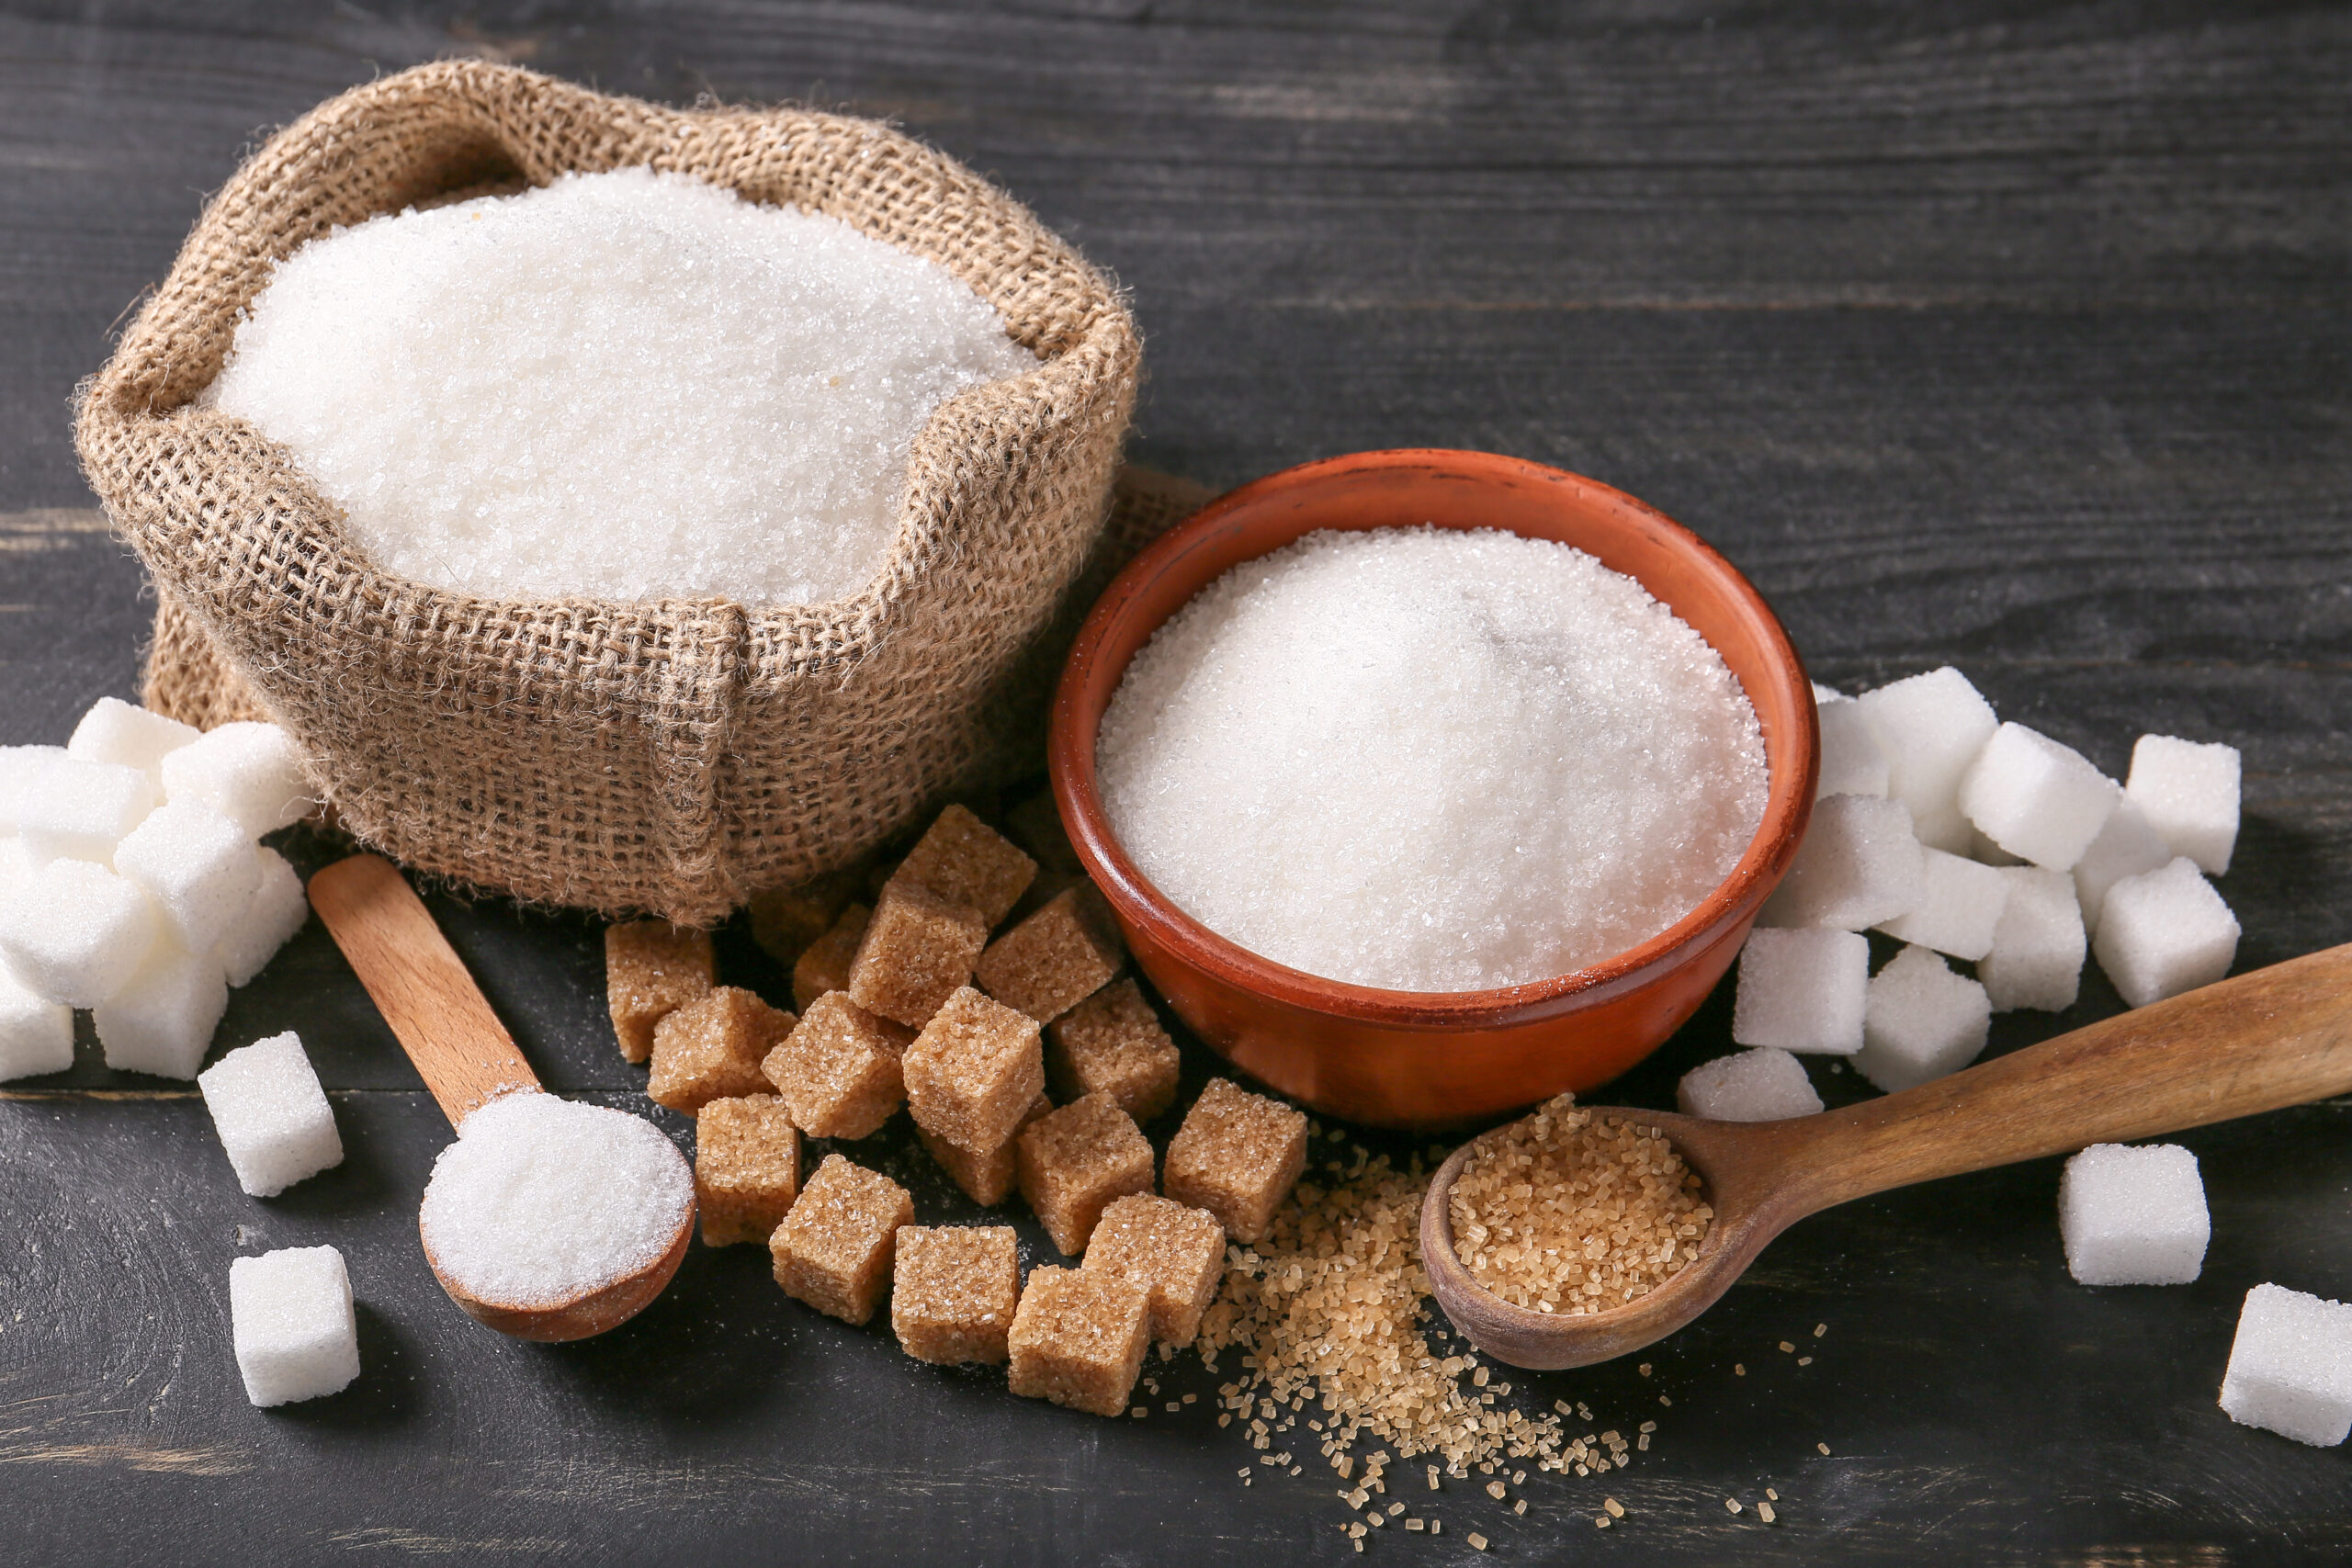 Why Is Sugar A Health Concern